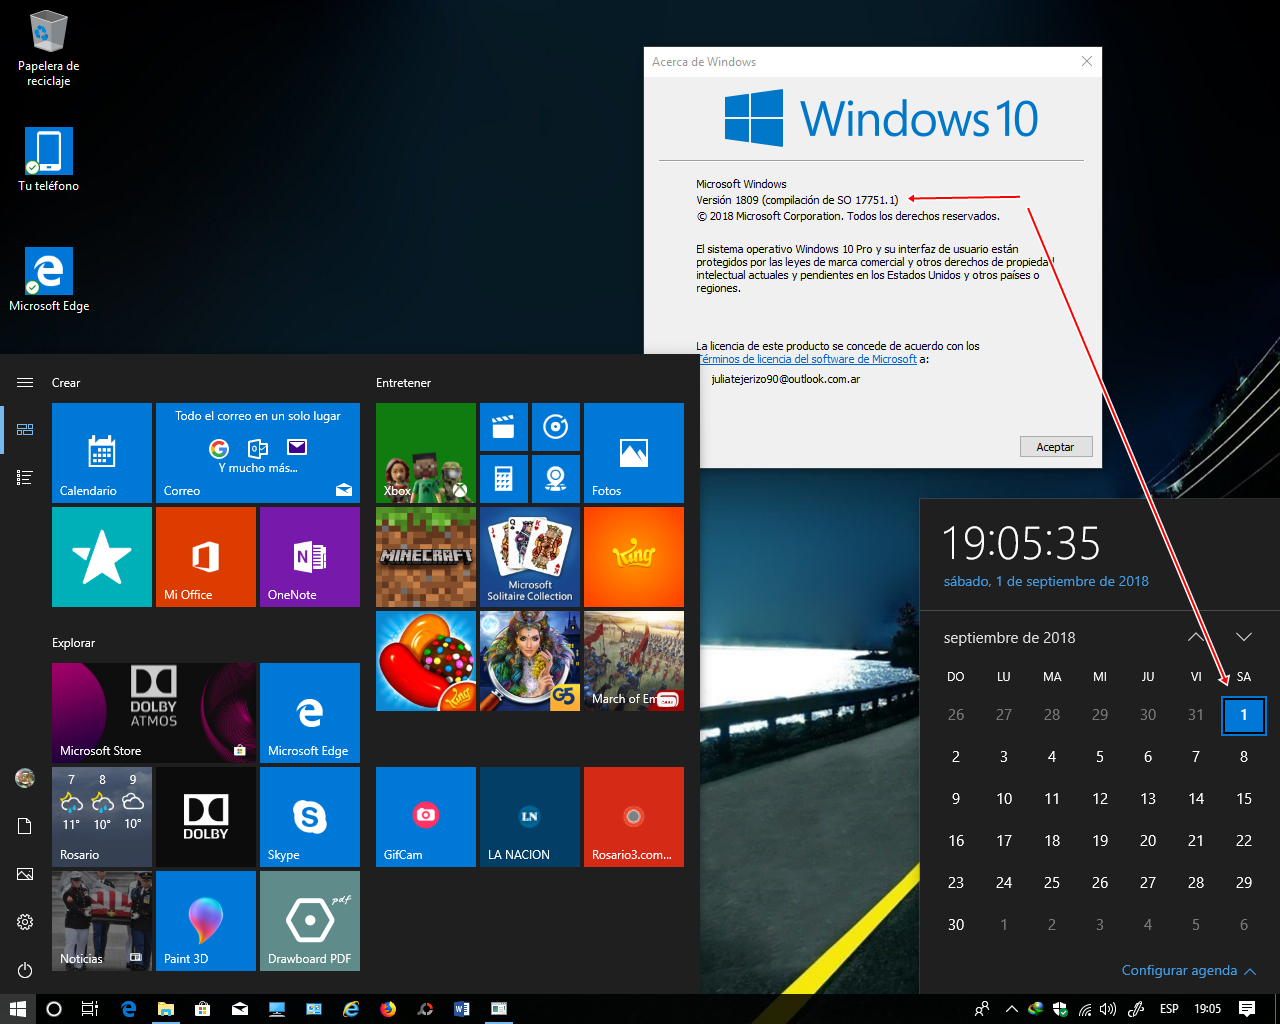 CIYFshtB_o - Windows 10 RS5 6en1 OEM + Extras [Preactivado][x64][Esp] [UL-FJ-RG] - Descargas en general